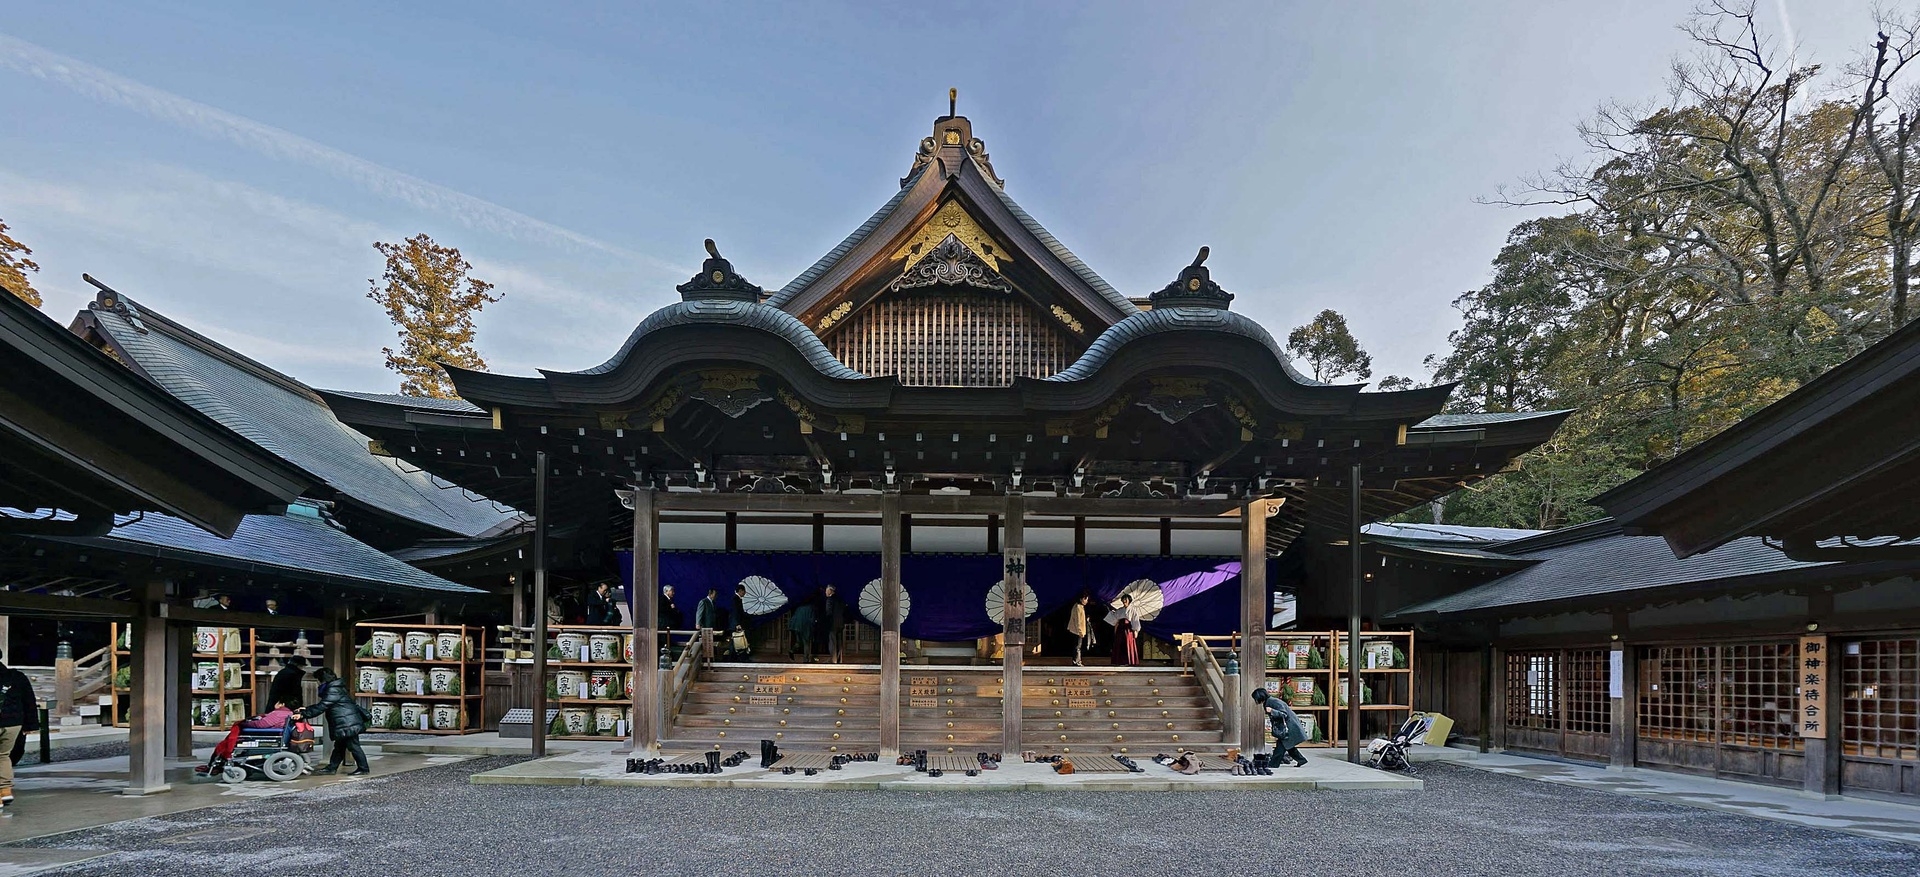 Ngôi đền Nhật cứ 20 năm được dỡ ra xây lại một lần-2